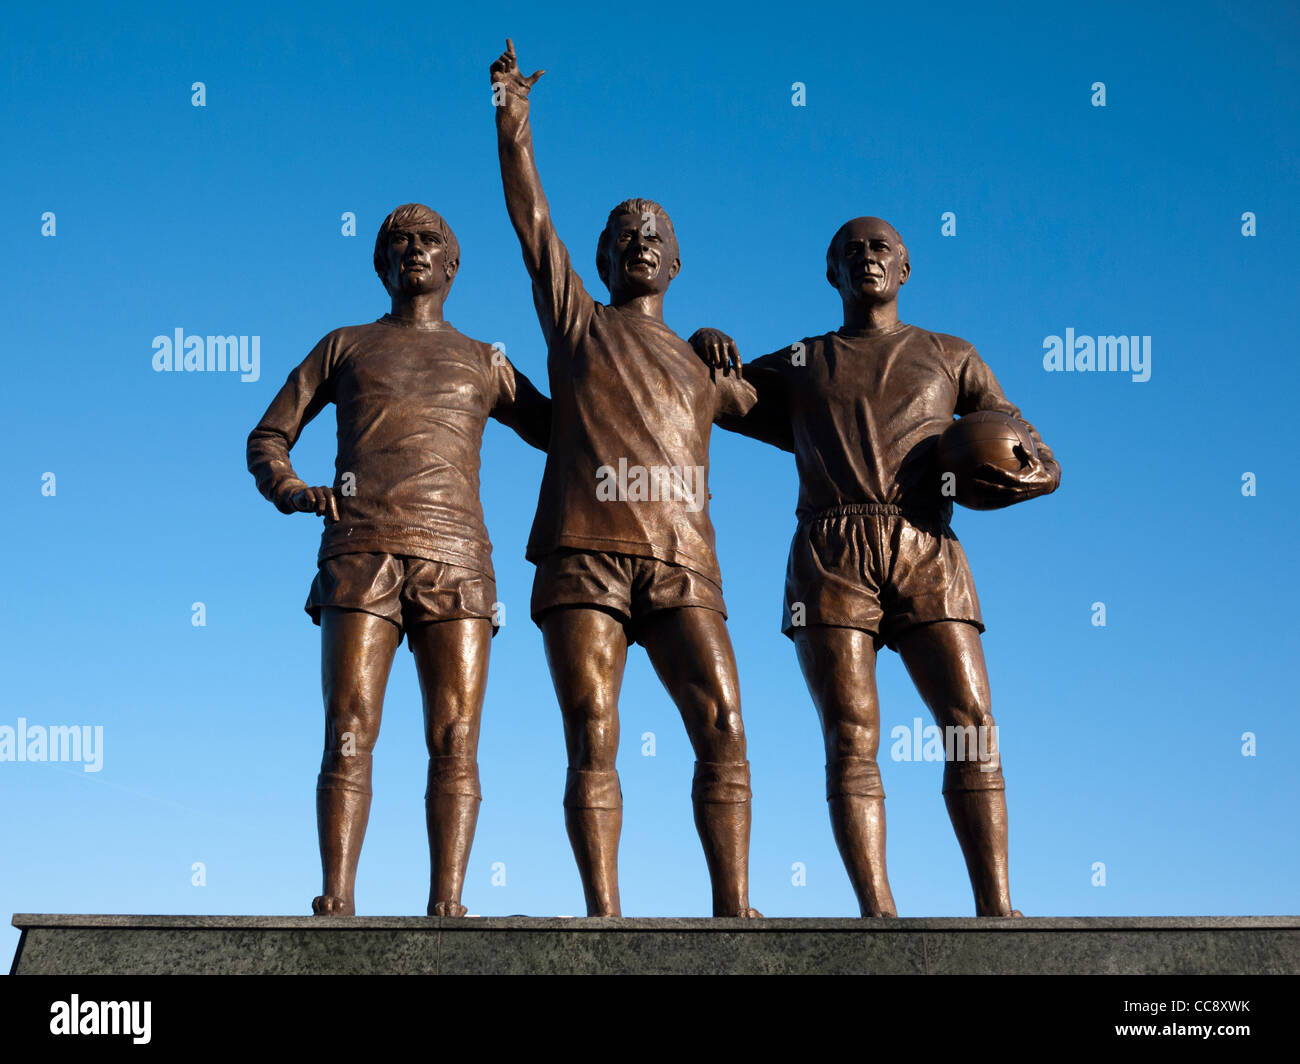 Statuen von Sir Bobby Charlton, George Best und Denis Law Statue im Old Trafford, Manchester United Fußballplatz Stockfoto